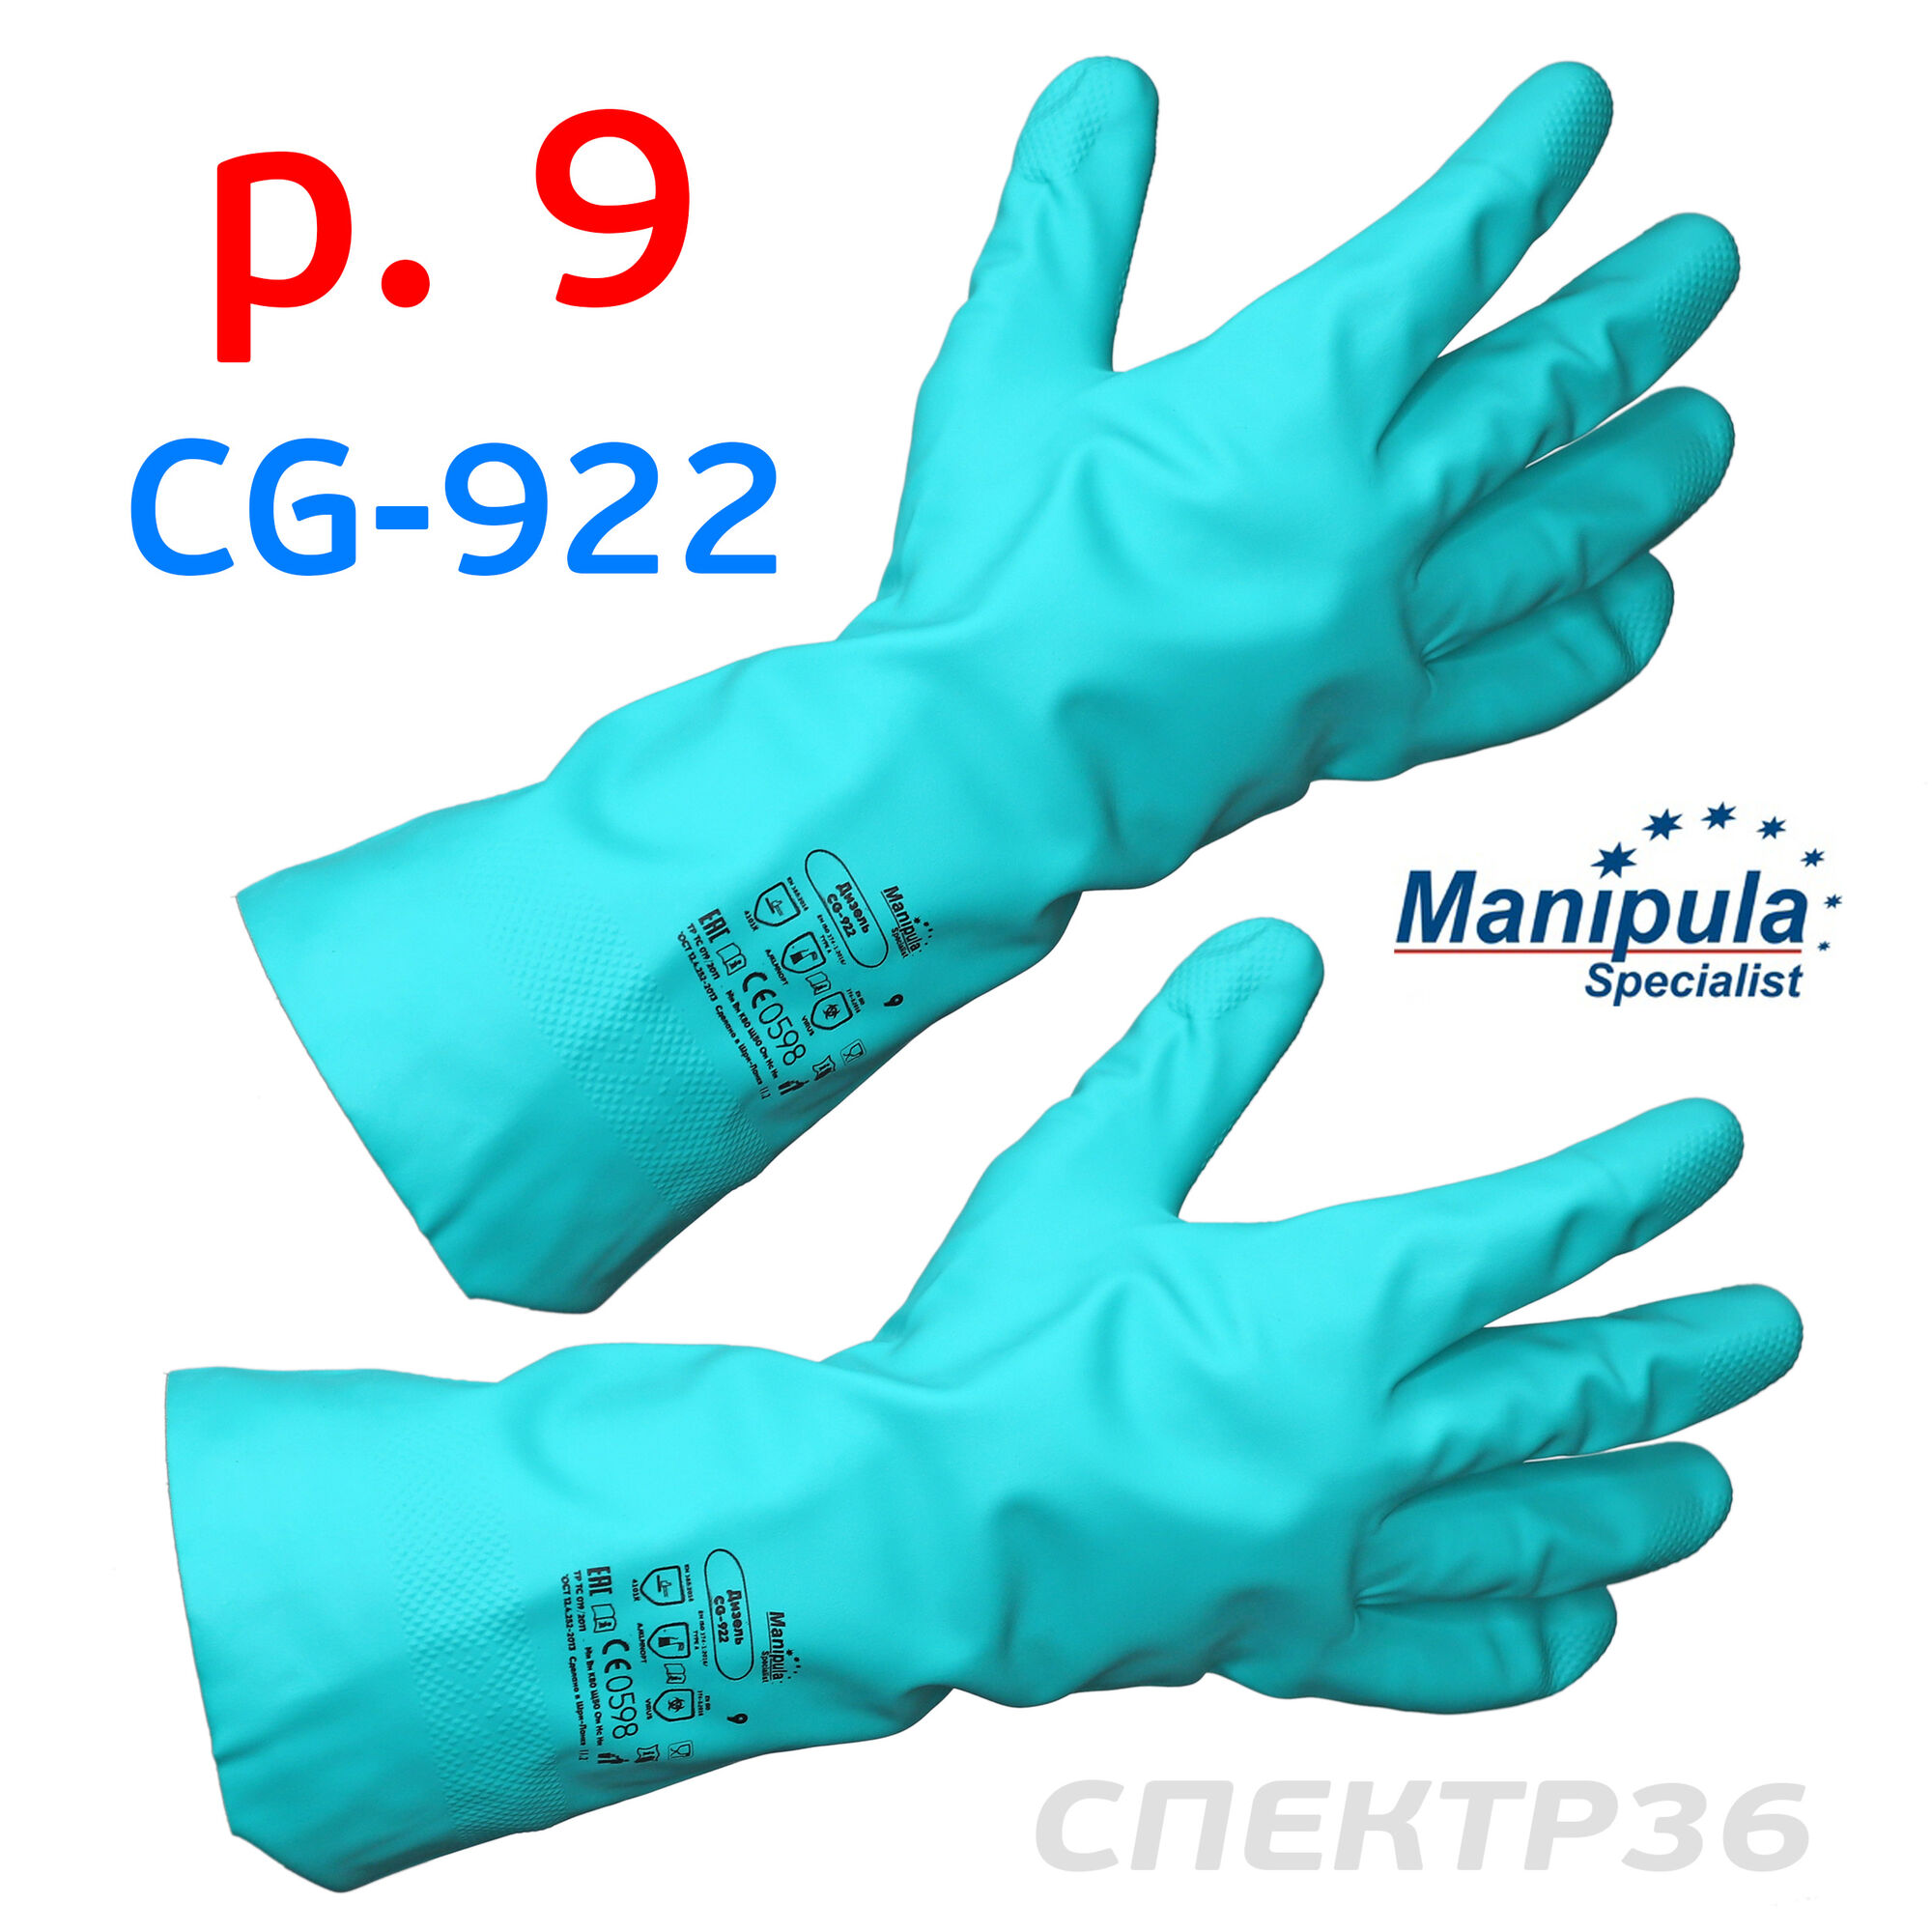 Перчатки Дизель р.9 (пара) CG-922 химстойкие Manipula